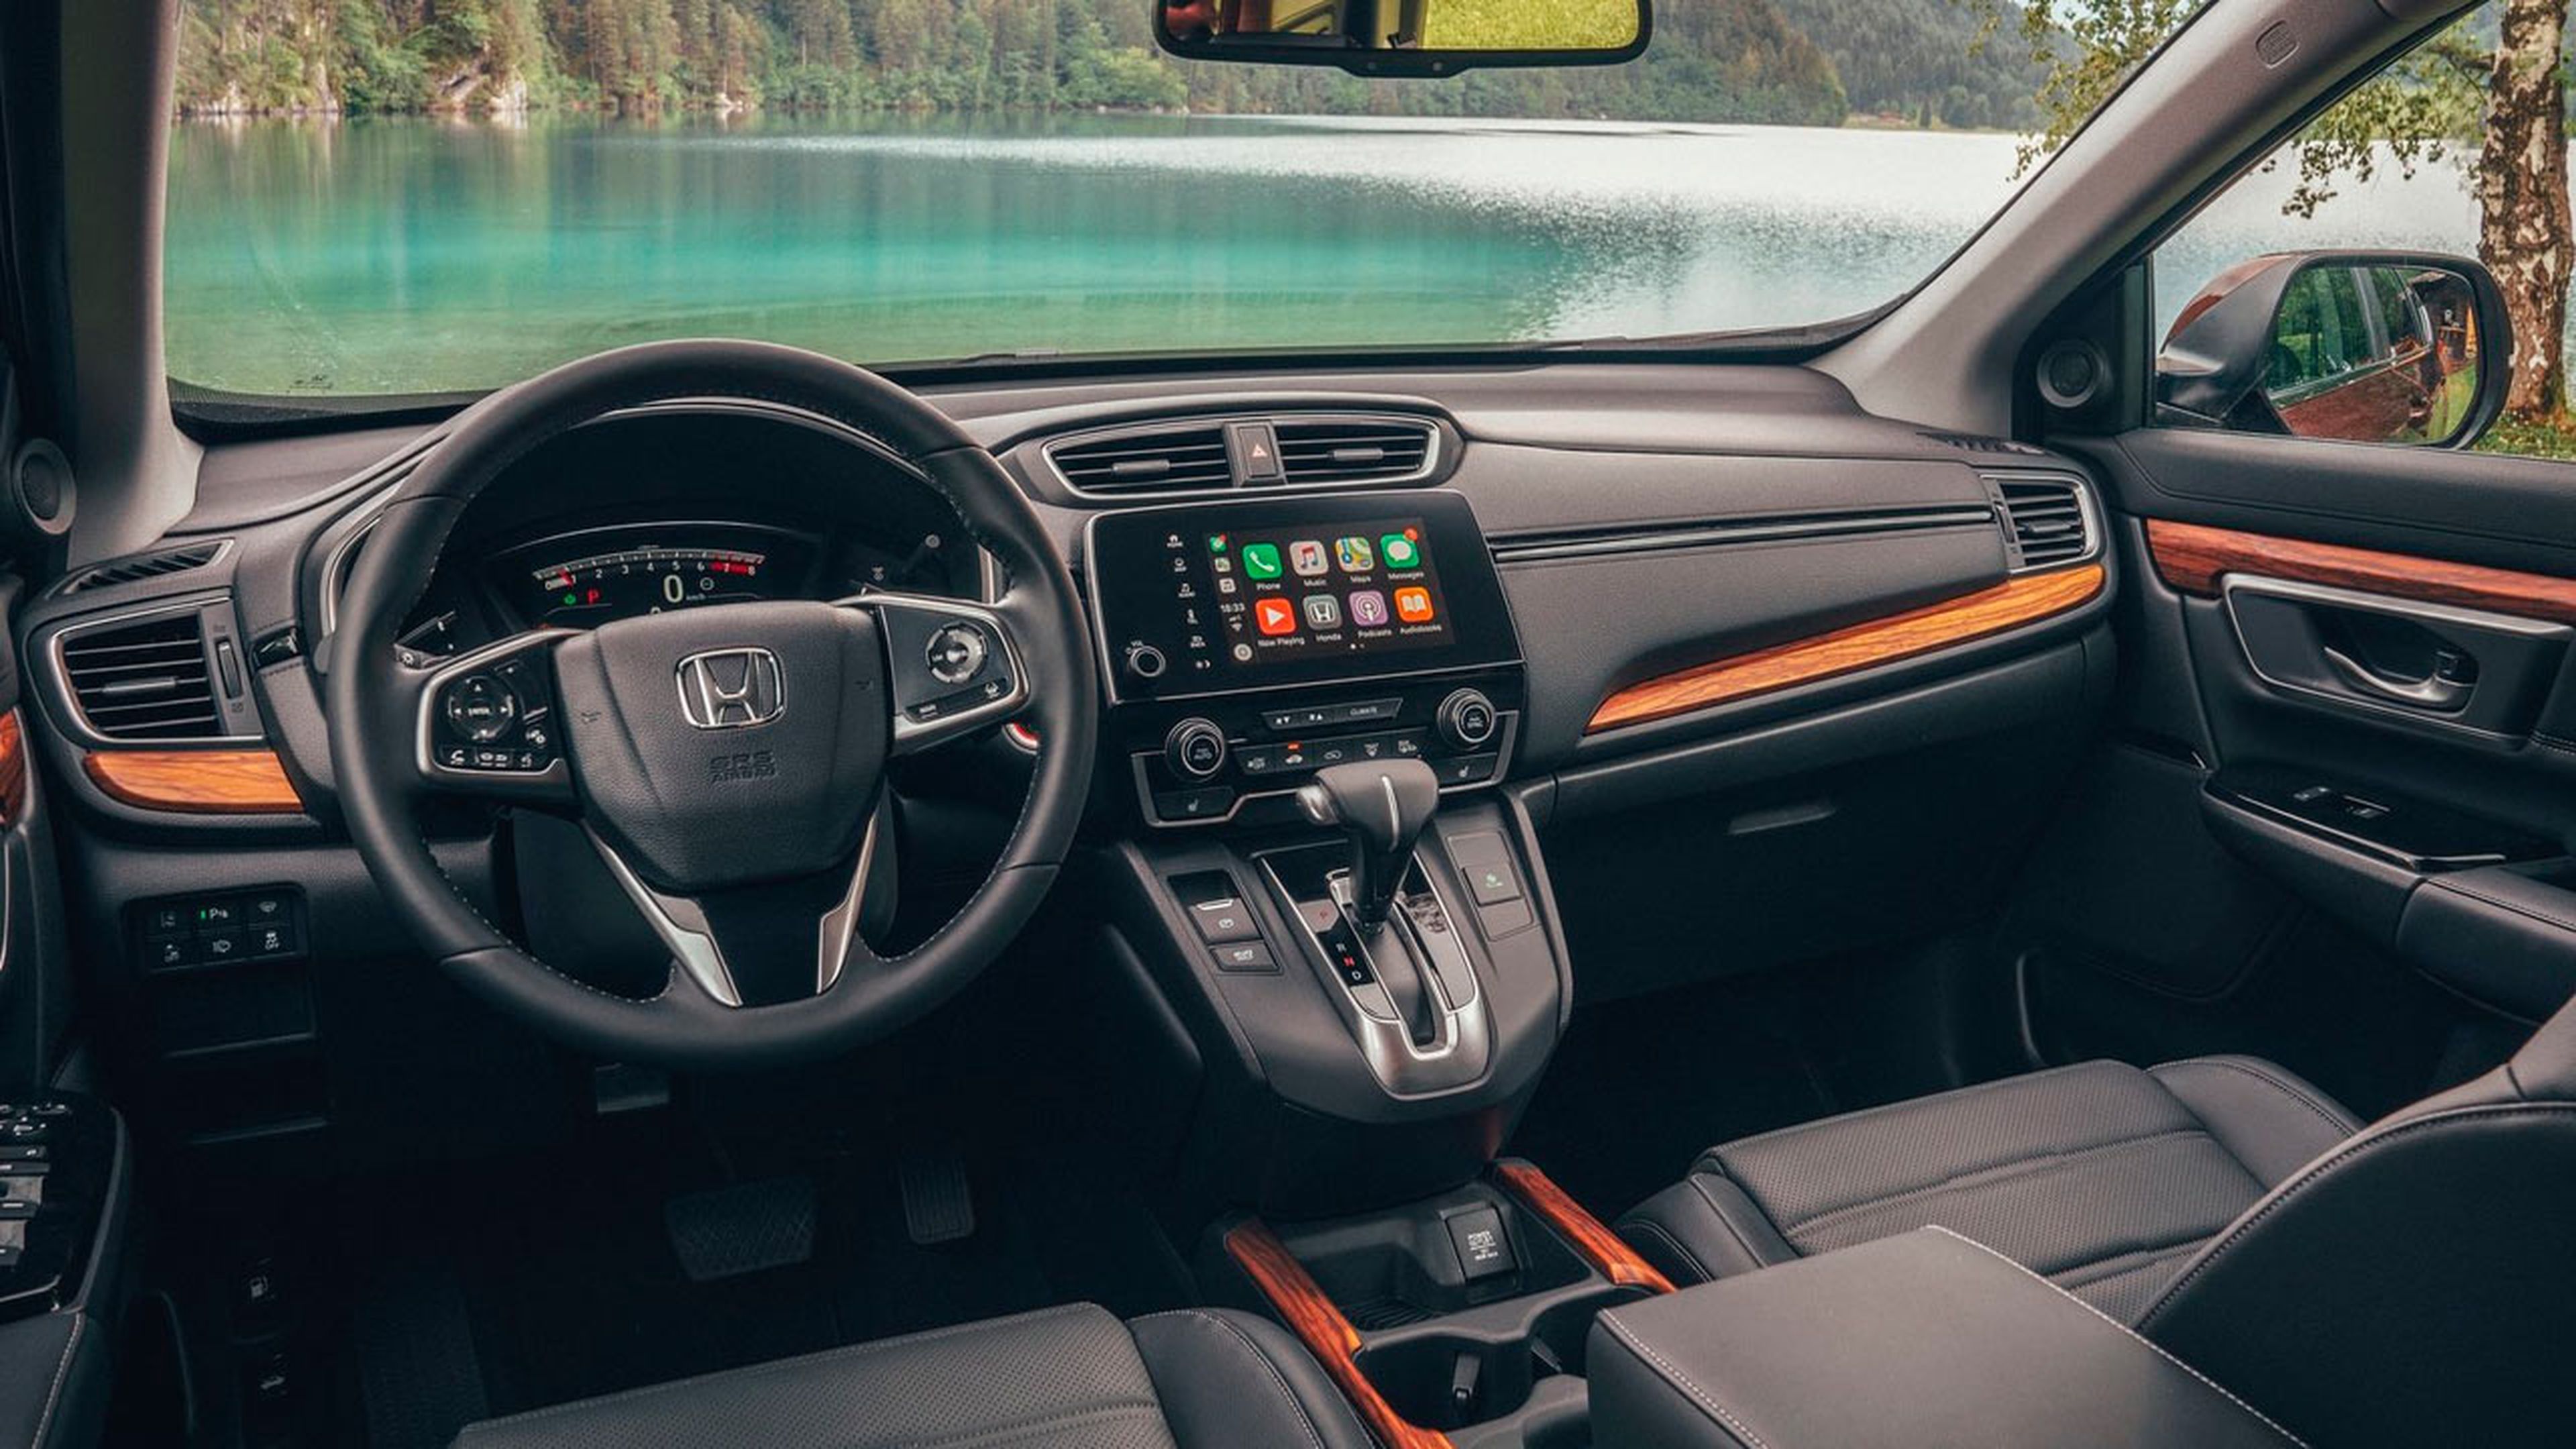 Prueba Honda CR-V 2019 1.5 VTEC 4x4 173 CV